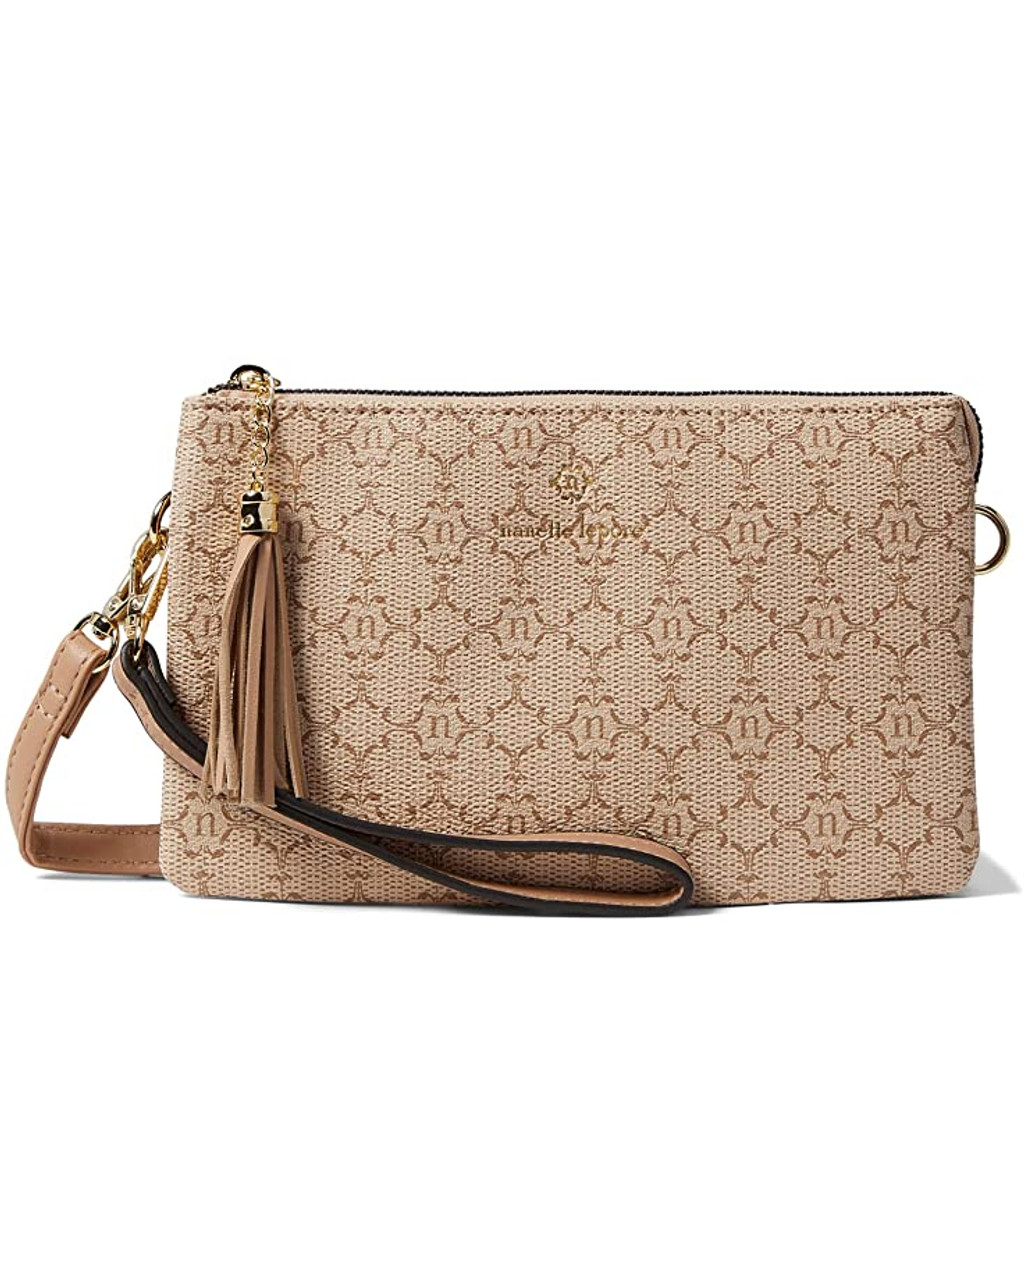 Handbag Designer By Nanette Lepore Size: Medium